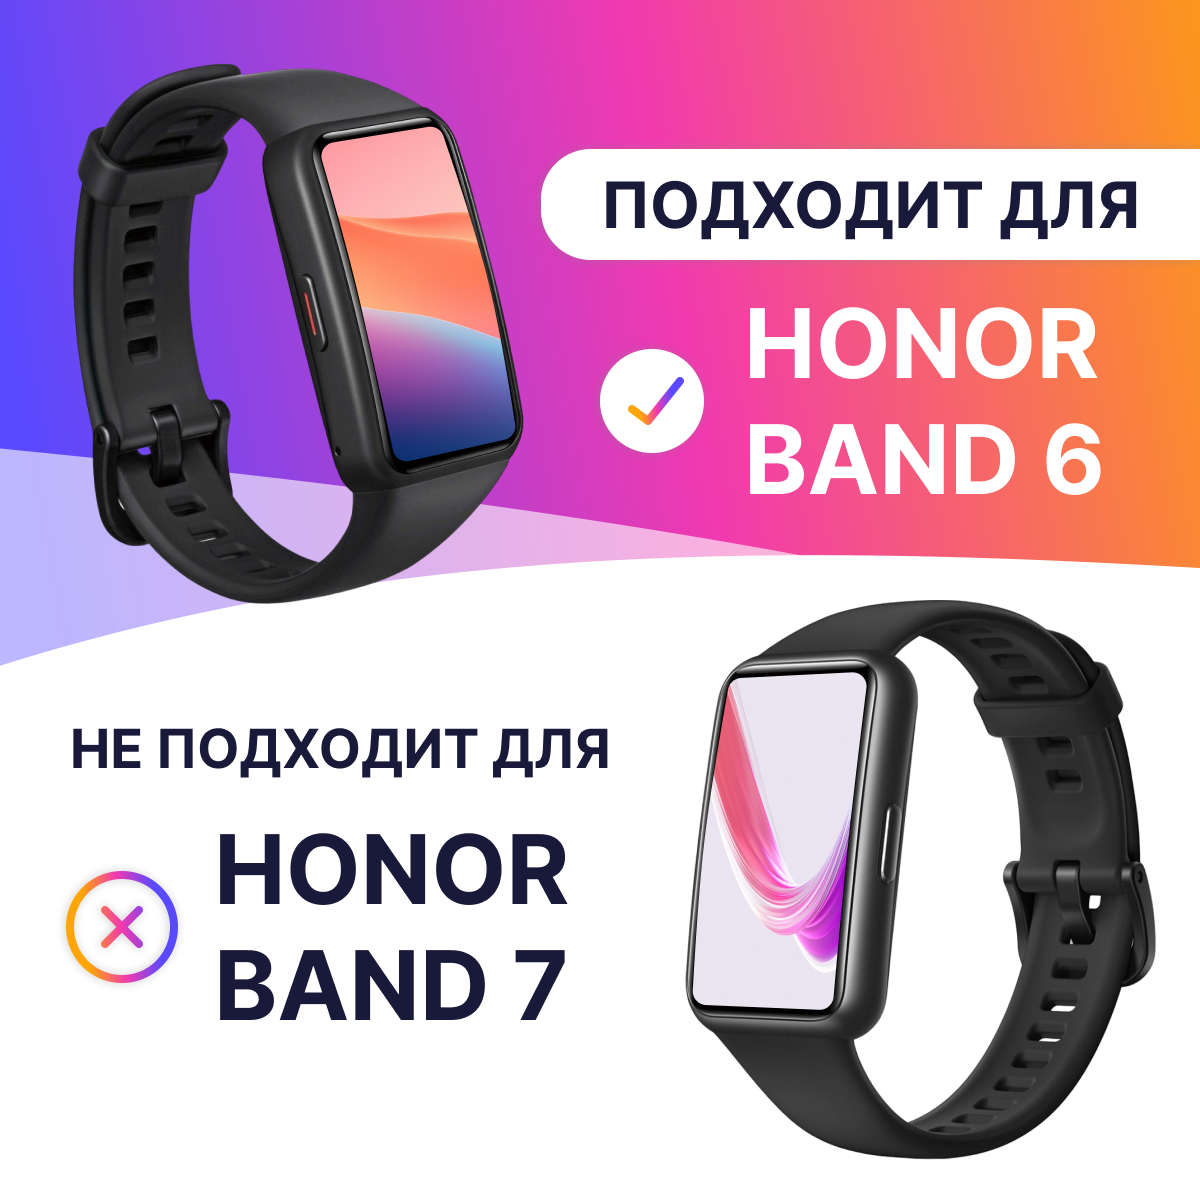 Силиконовый ремешок для Honor Band 6 и Huawei Band 6 / Сменный браслет для умныхарт часов/ Фитнес трекера Хонор Бэнд 6 / Хуавей Бэнд 6 Сиреневый